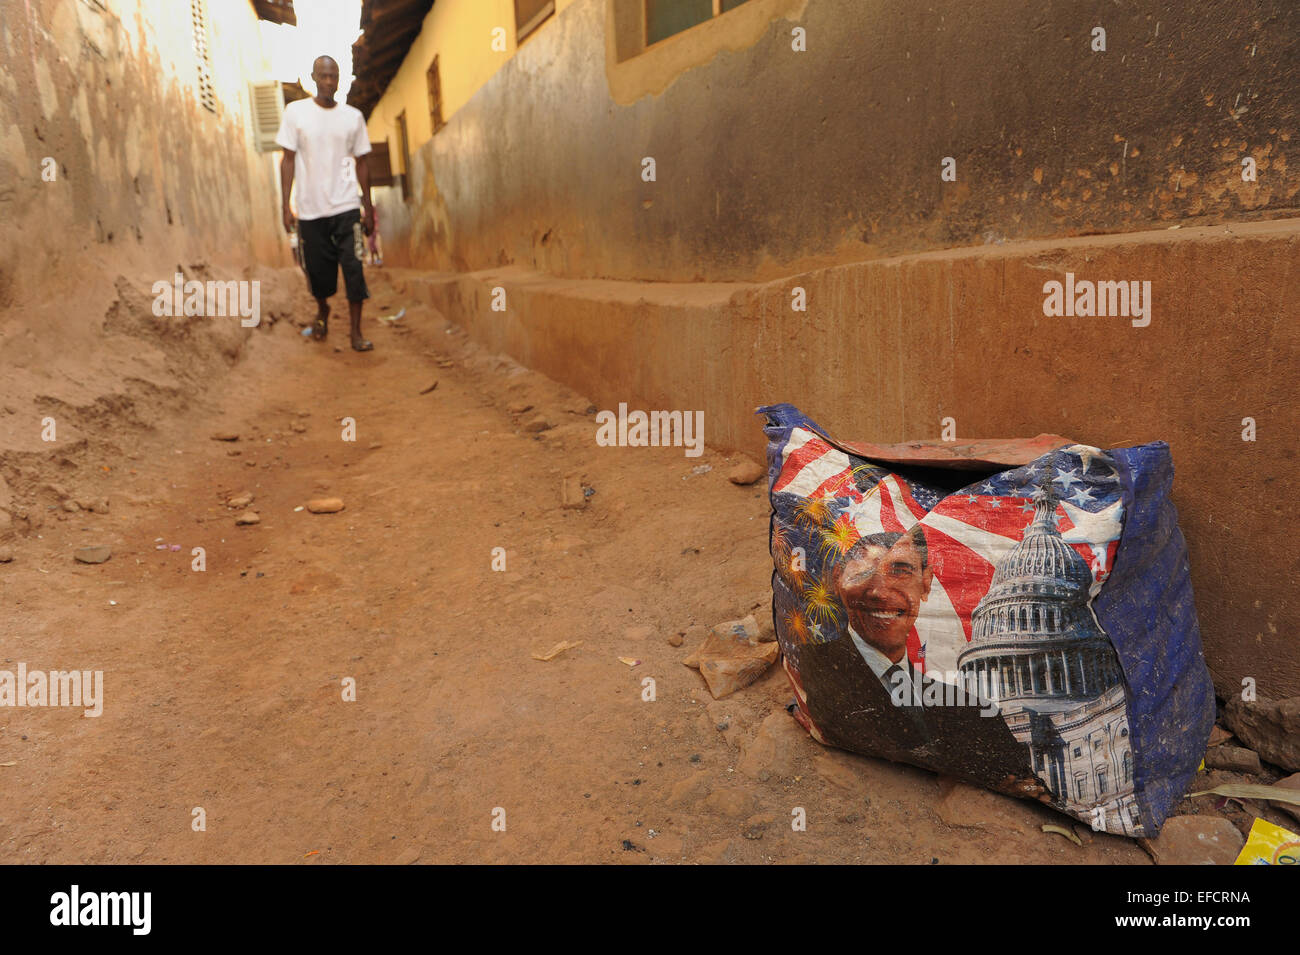 Un sac shopping à l'effigie du président américain Barak Obama se trouve dans une ruelle à Accra, Ghana, Afrique de l'Ouest. Banque D'Images